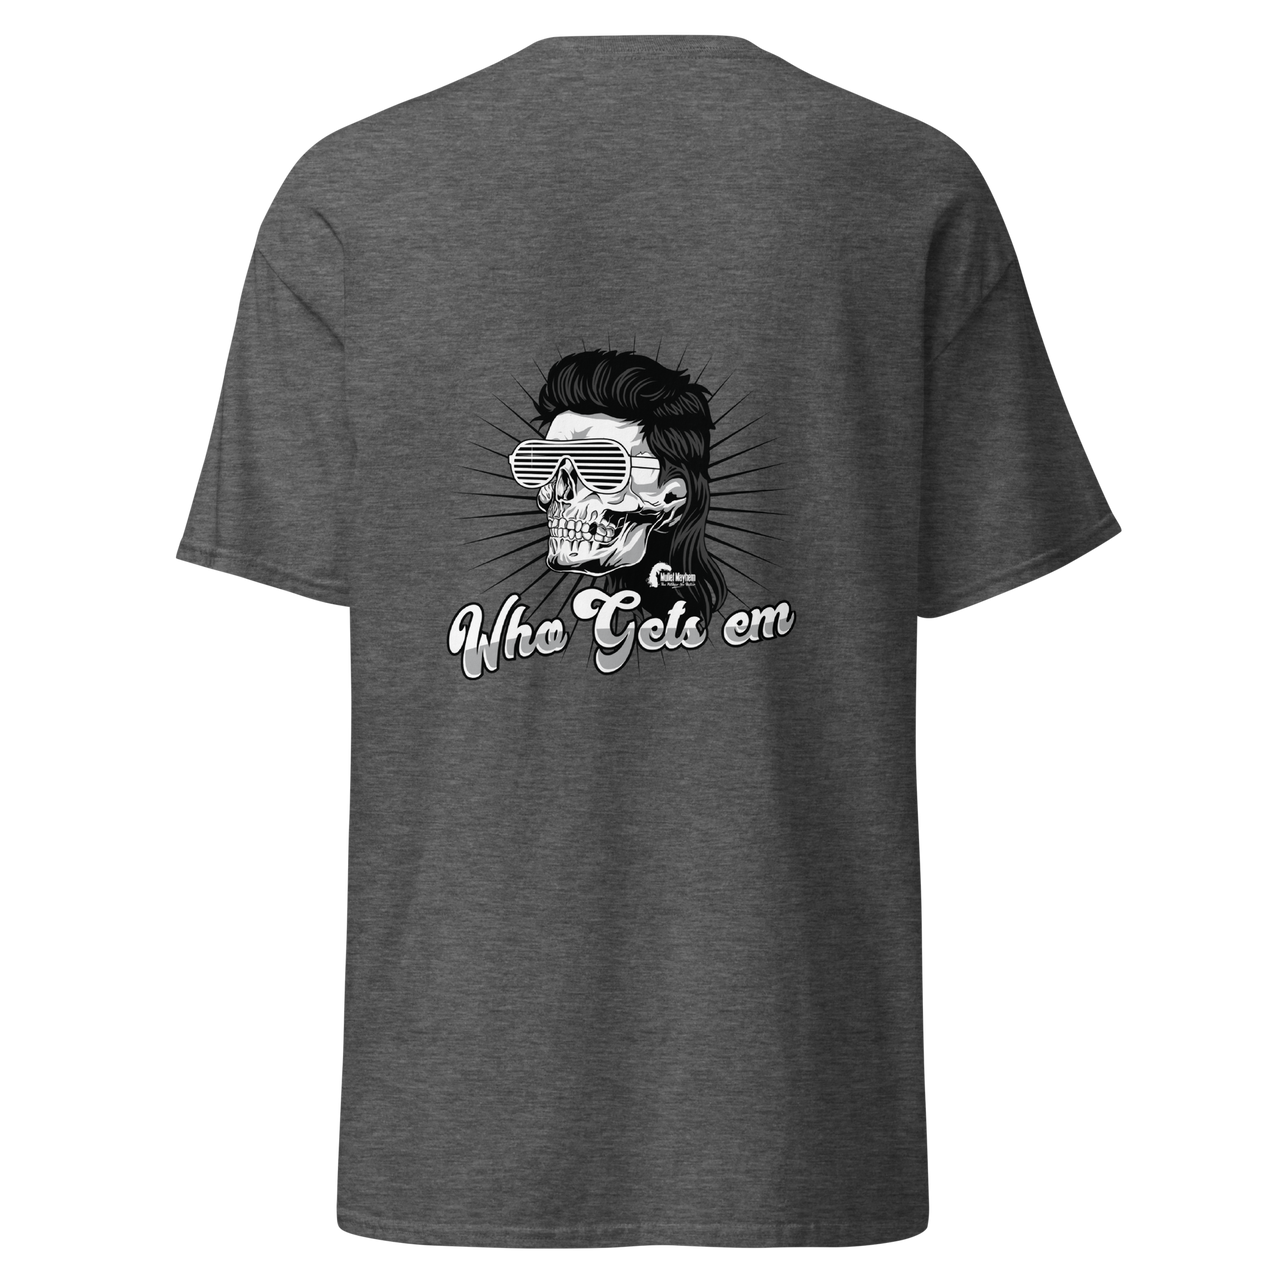 "Who Gets Em" Skull (t-Shirt)